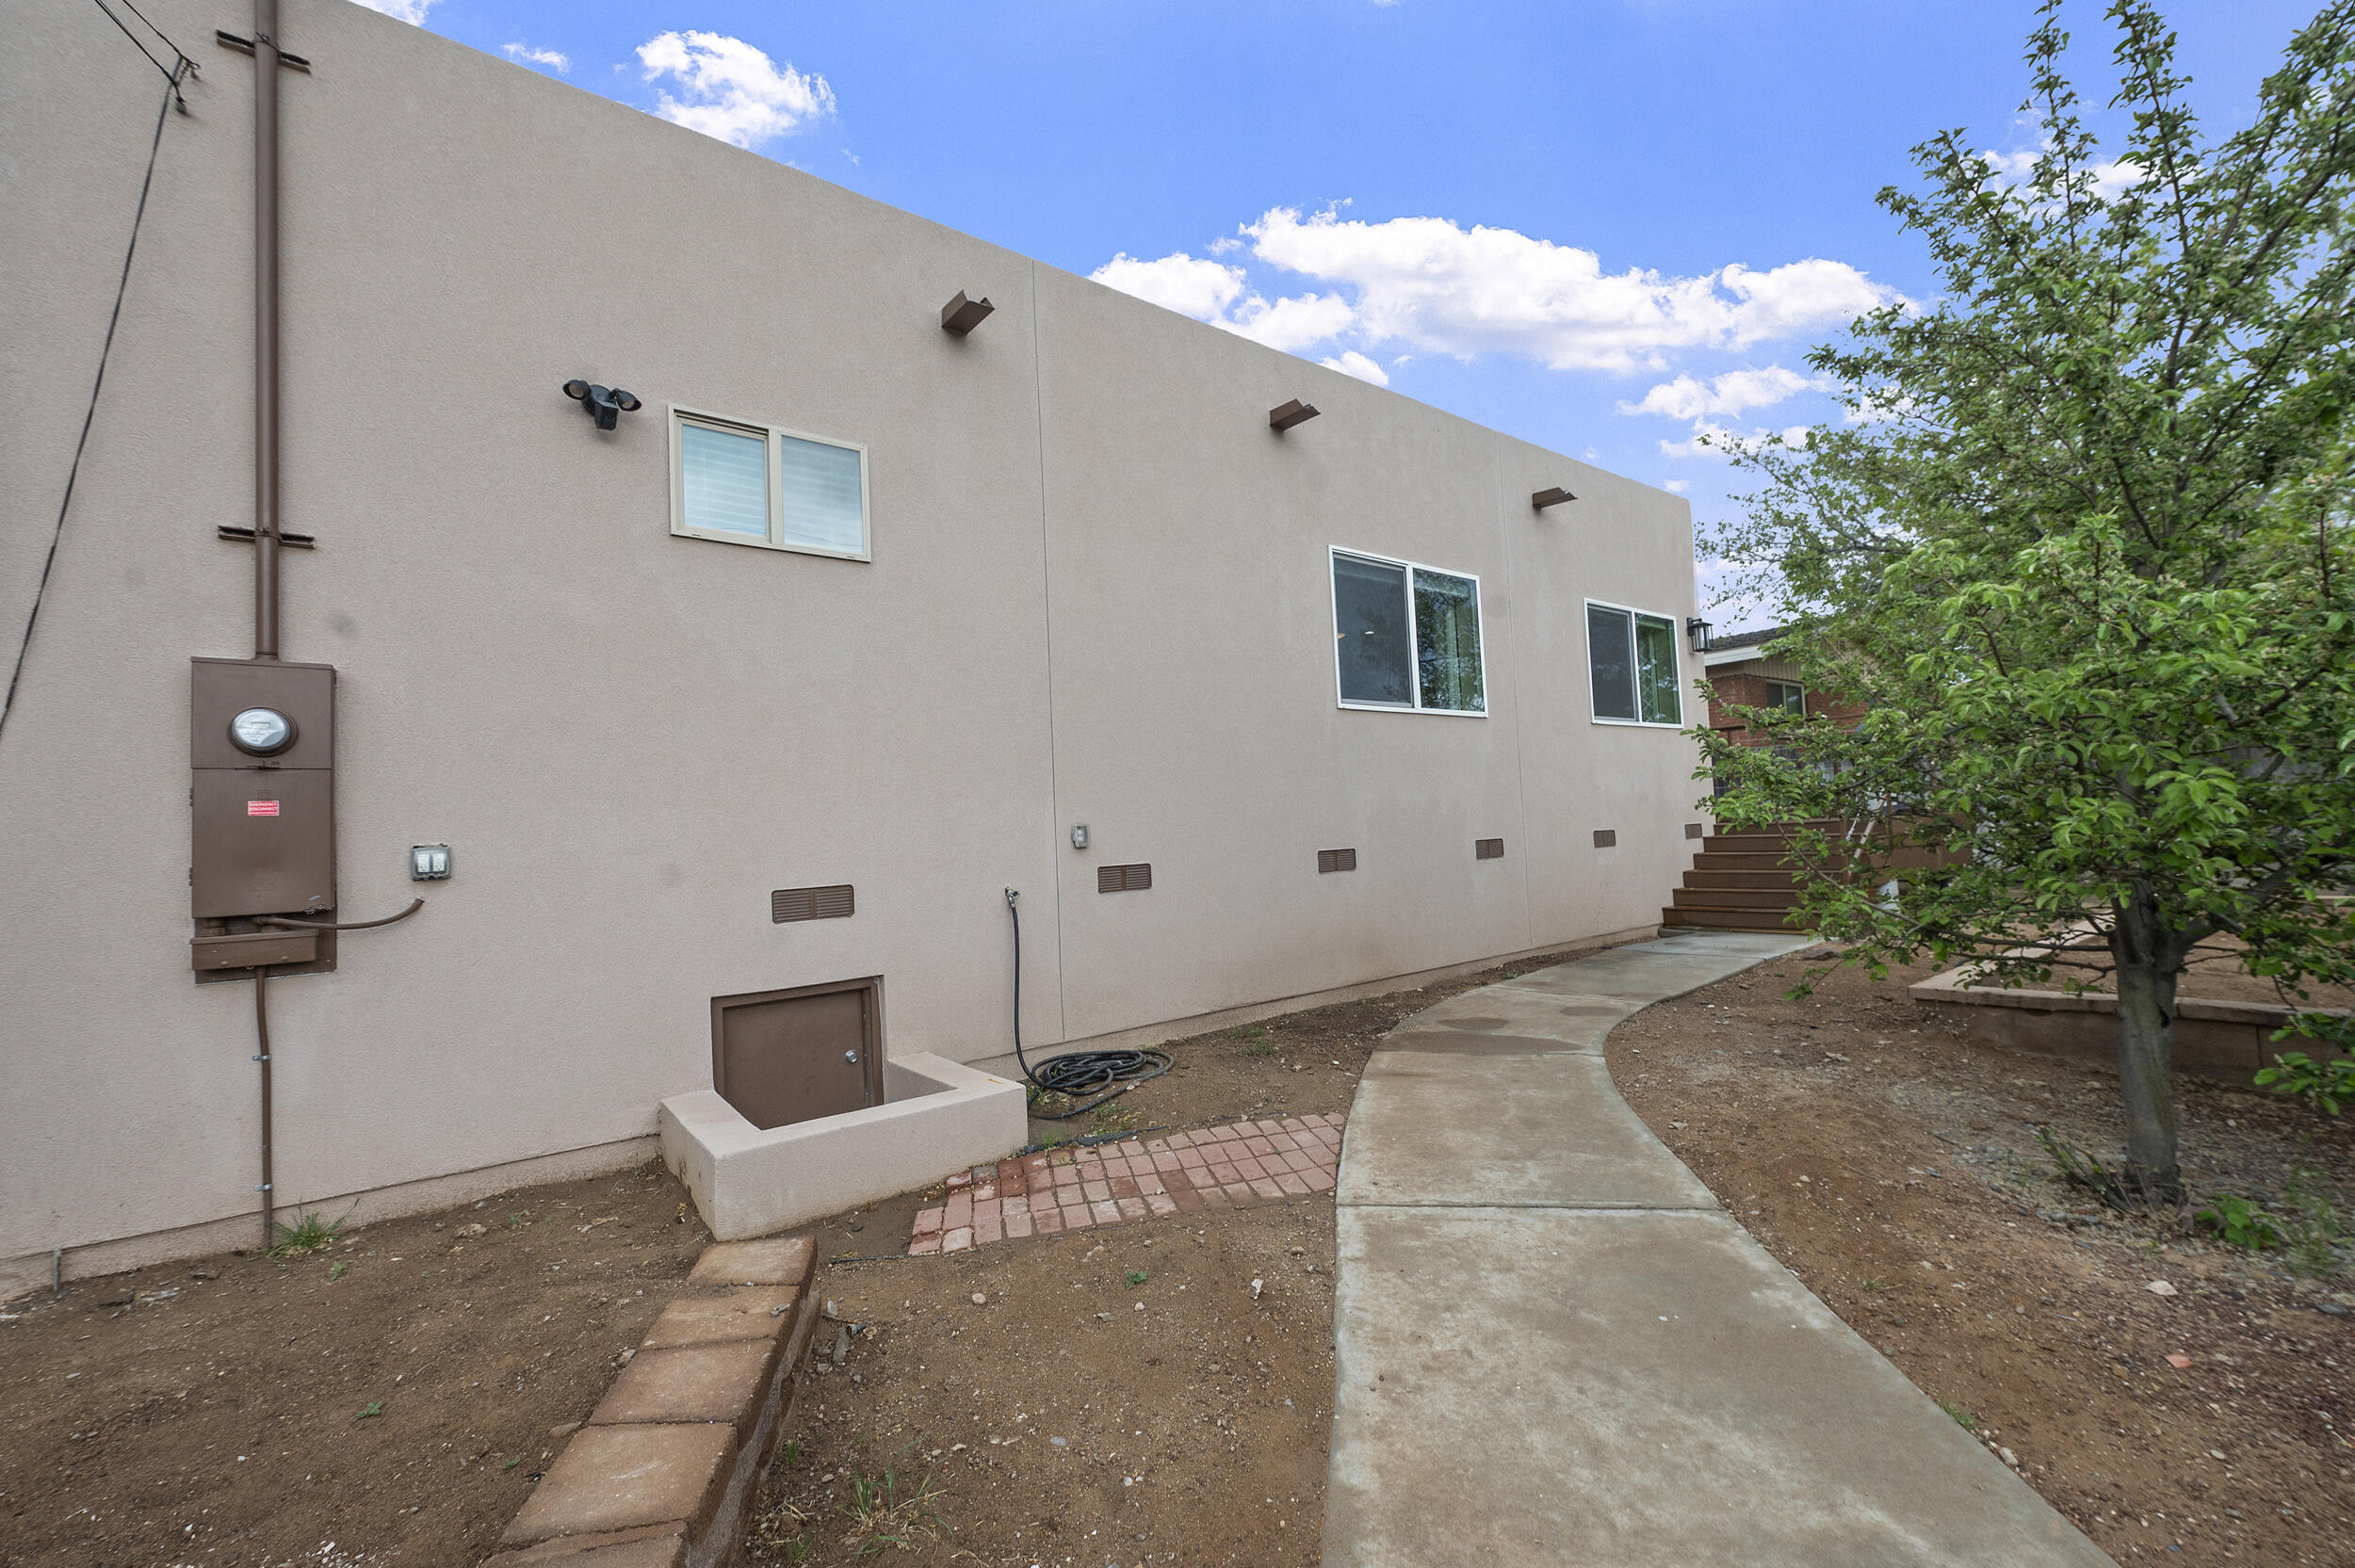 727 Adams Street NE, Albuquerque, New Mexico 87110, 3 Bedrooms Bedrooms, ,2 BathroomsBathrooms,Residential,For Sale,727 Adams Street NE,1061596